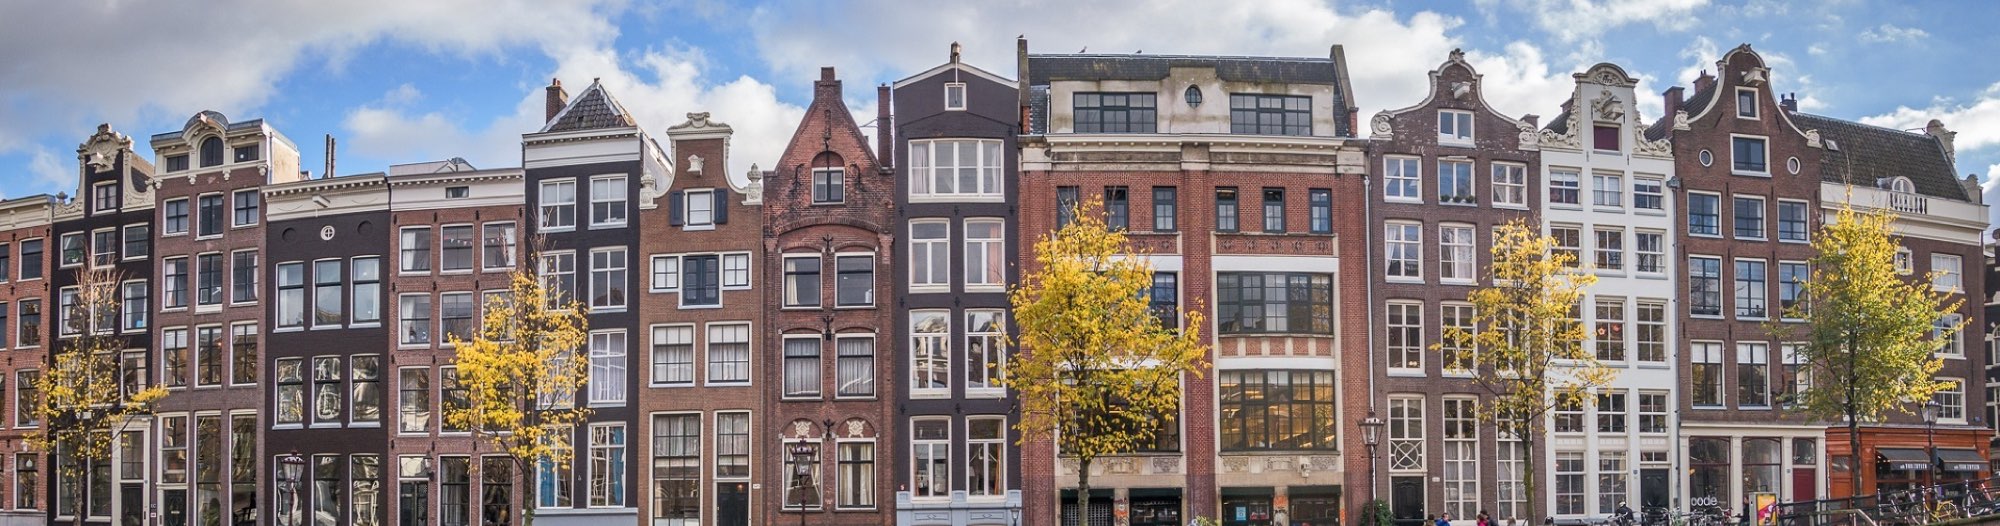 Vue.js Amsterdam 2019